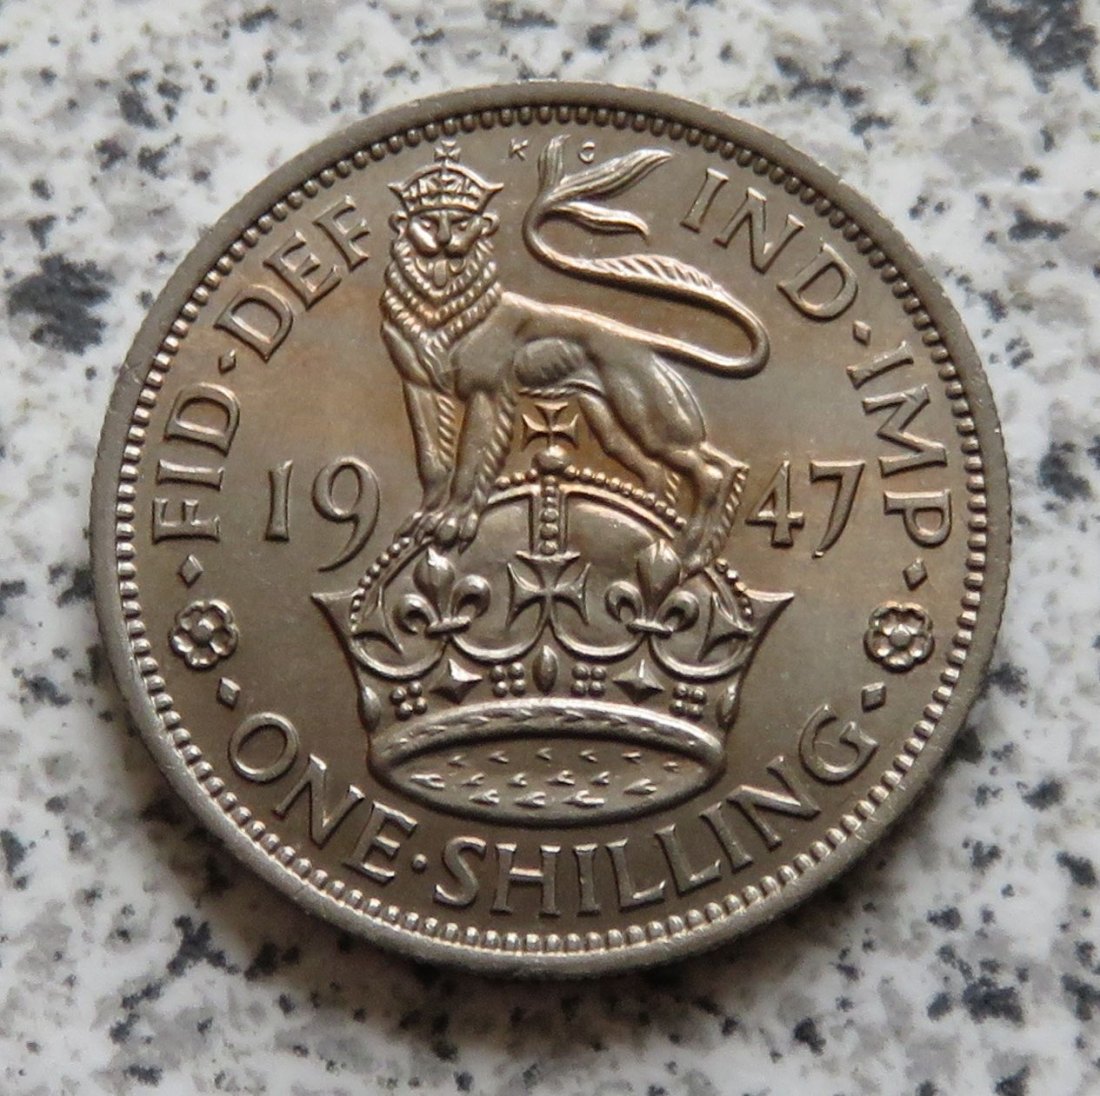  Großbritannien 1 Shilling 1947, Englisch, Erhaltung (2)   